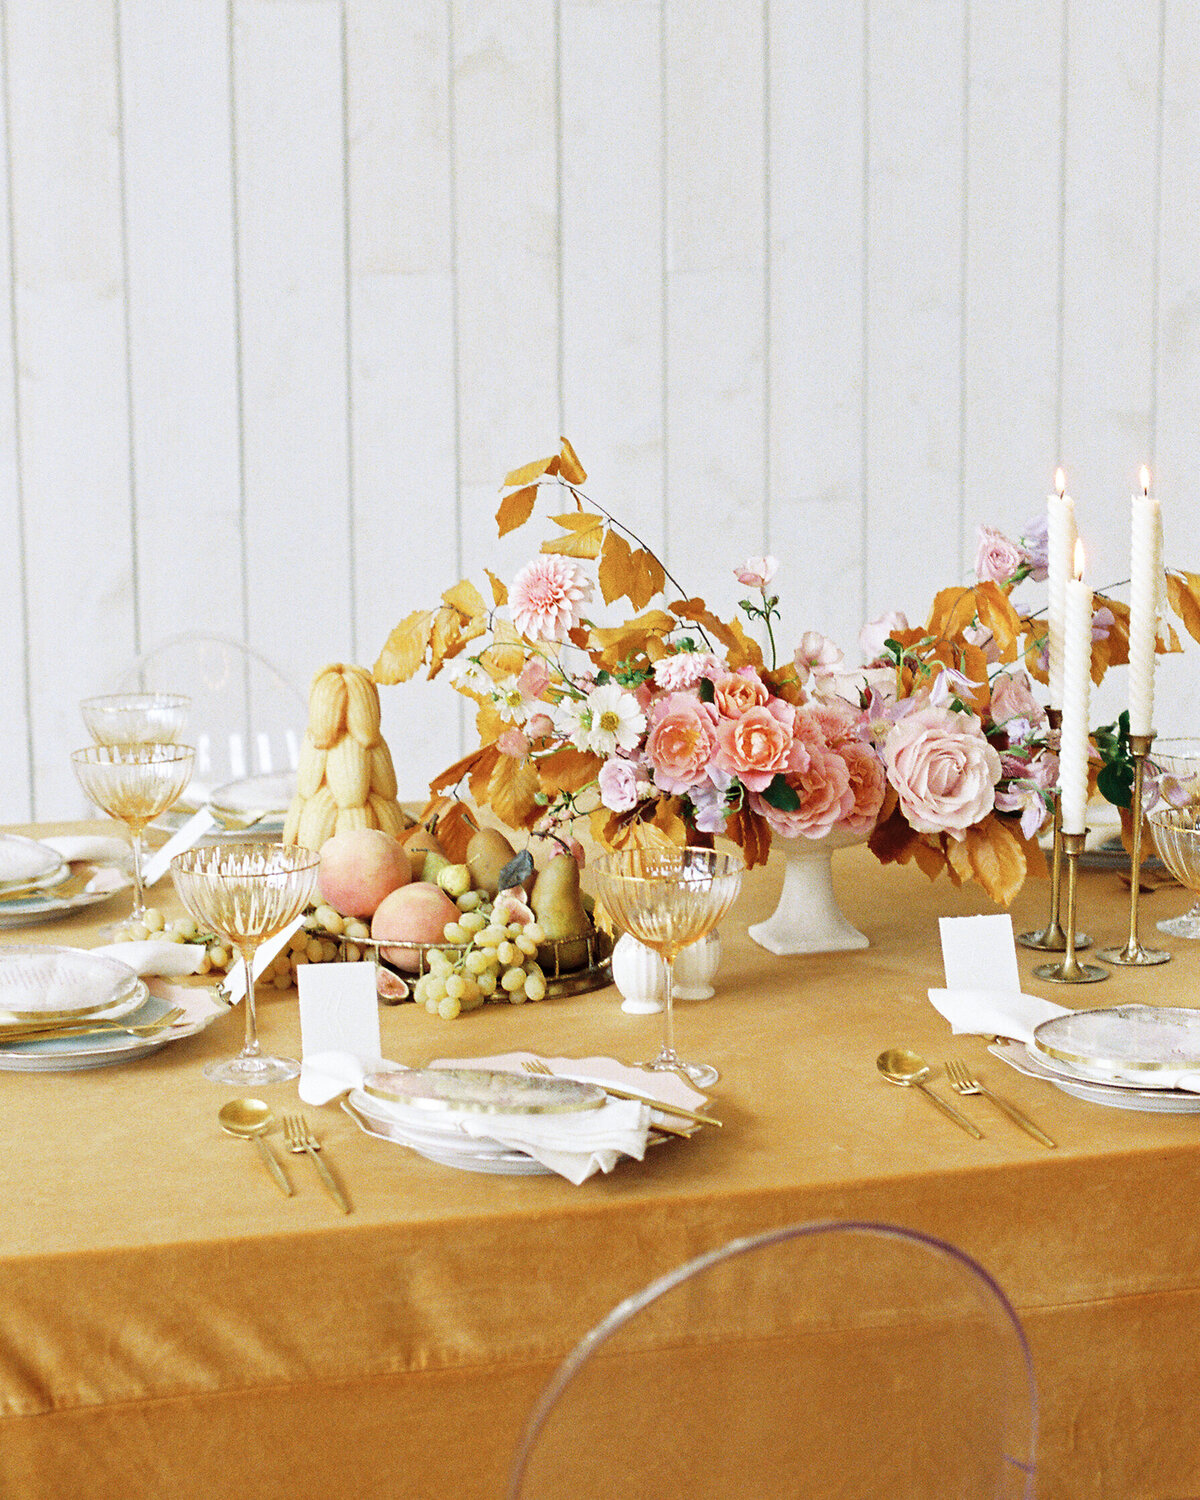 Romantic table setting  with goldenrod velvet linens